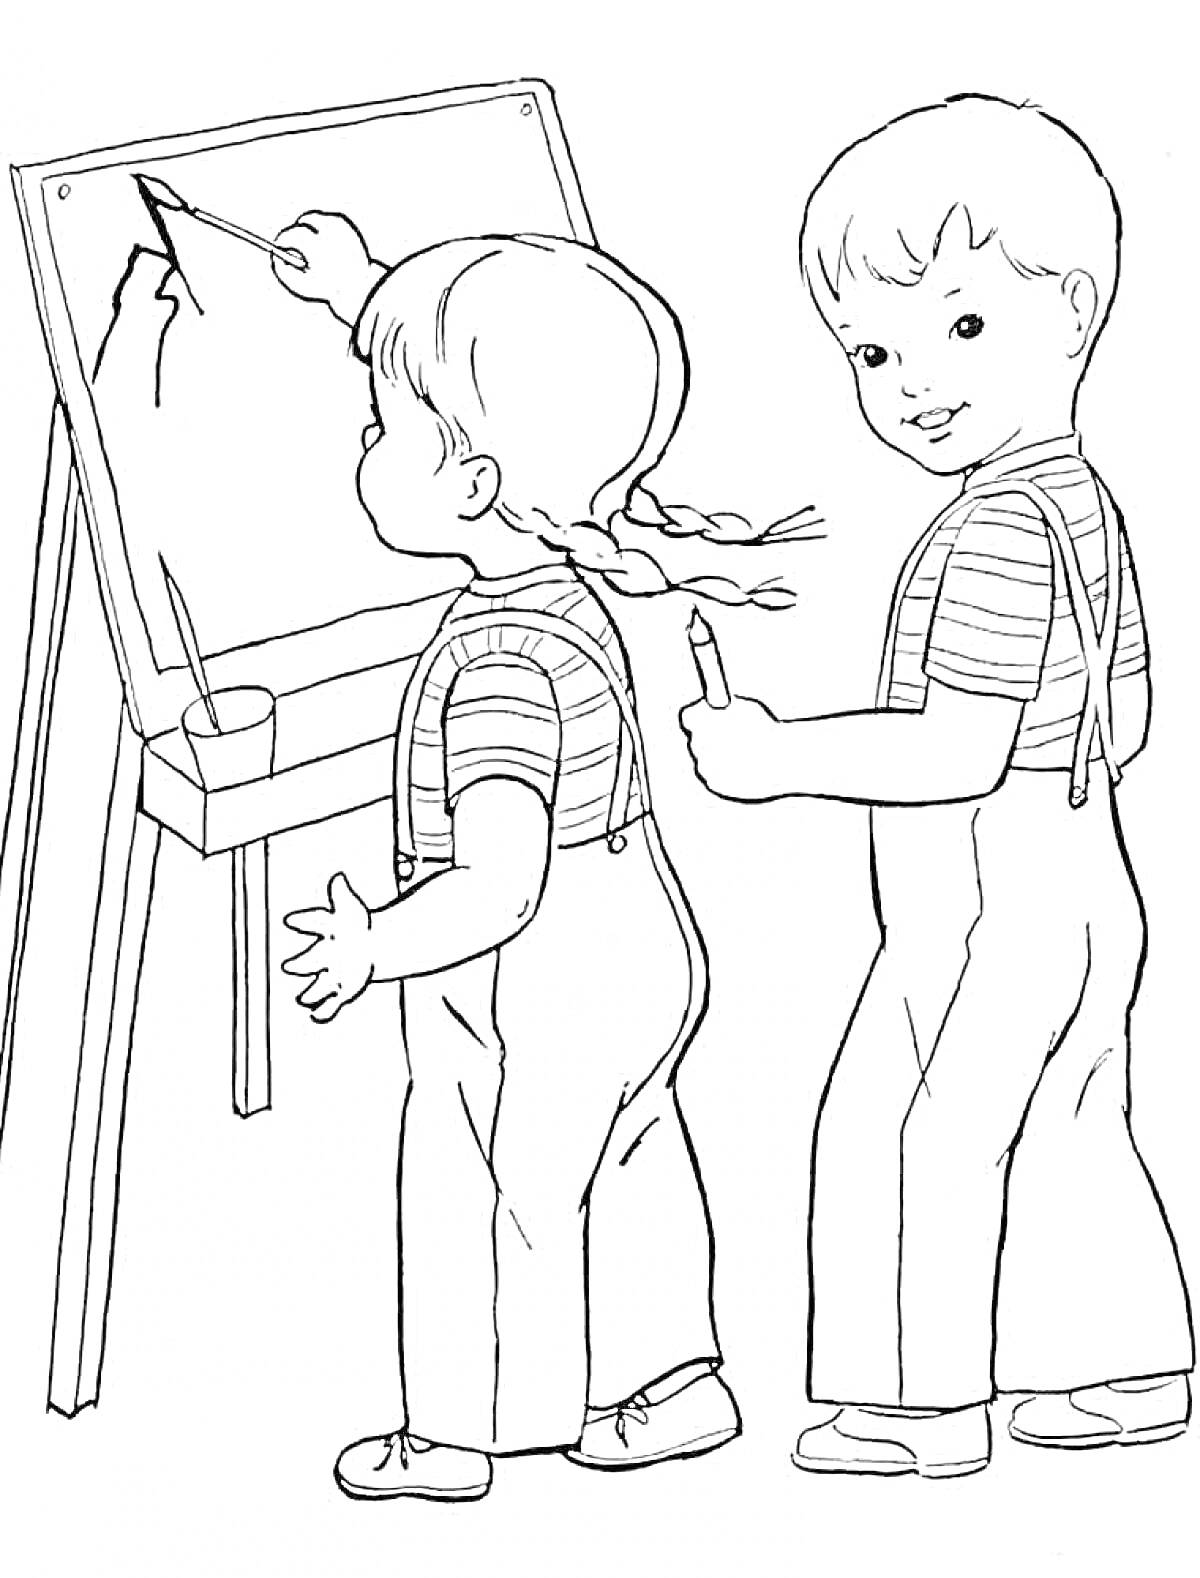 Раскраска Двое детей рисуют на доске в школе. Девочка и мальчик с карандашами, мольберт с рисунком, стаканчик для карандашей.